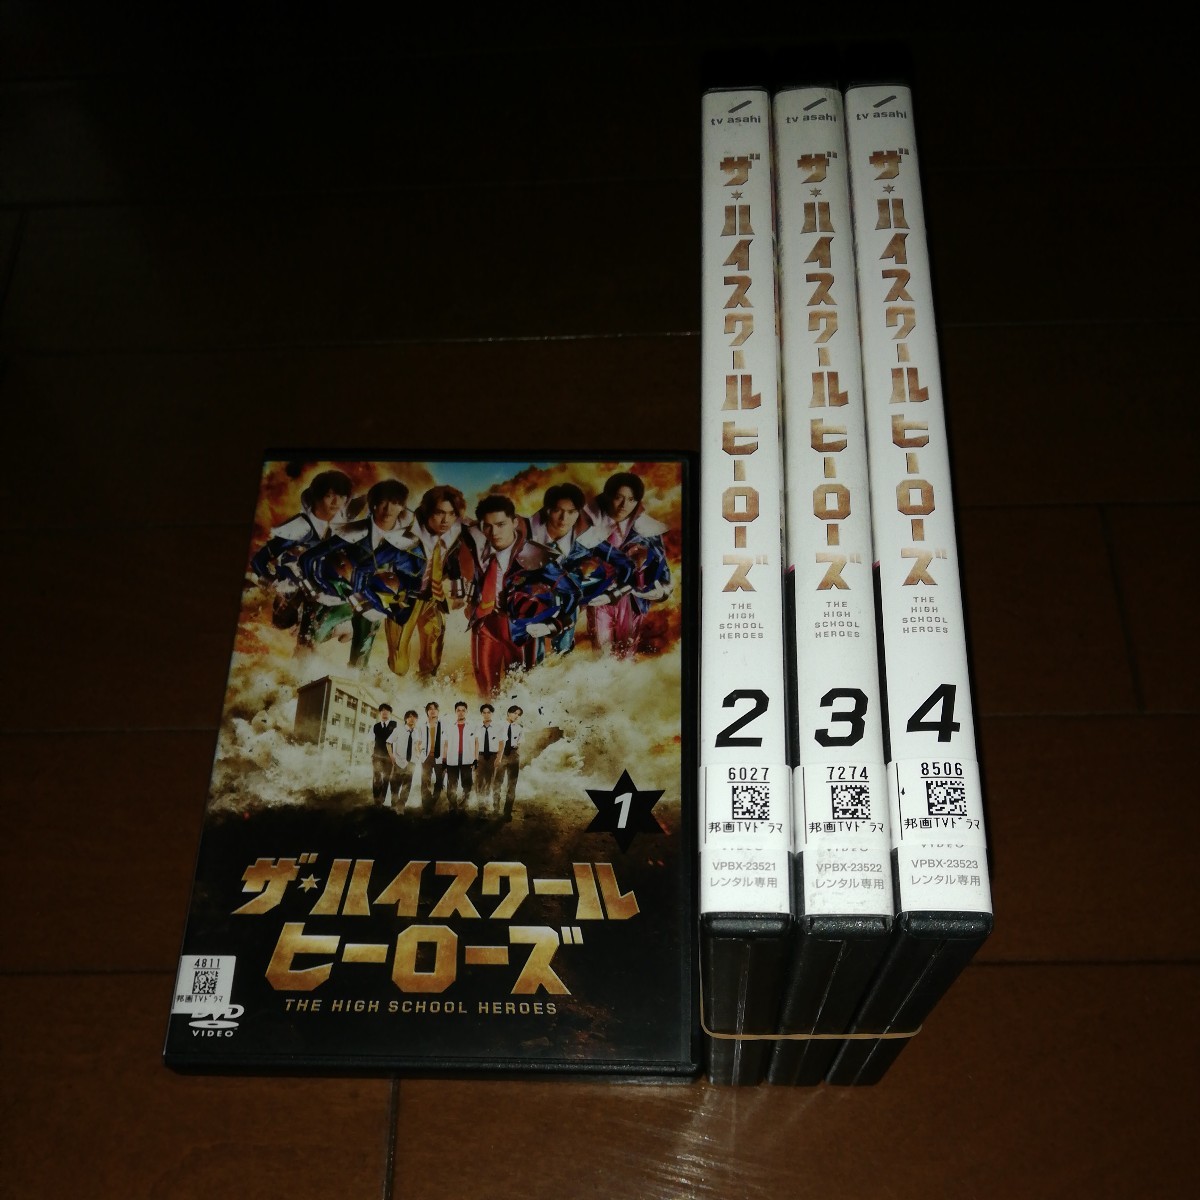 'ザ・ハイスクールヒーローズ DVD、全４巻'美少年、中山美穂、柳葉敏郎